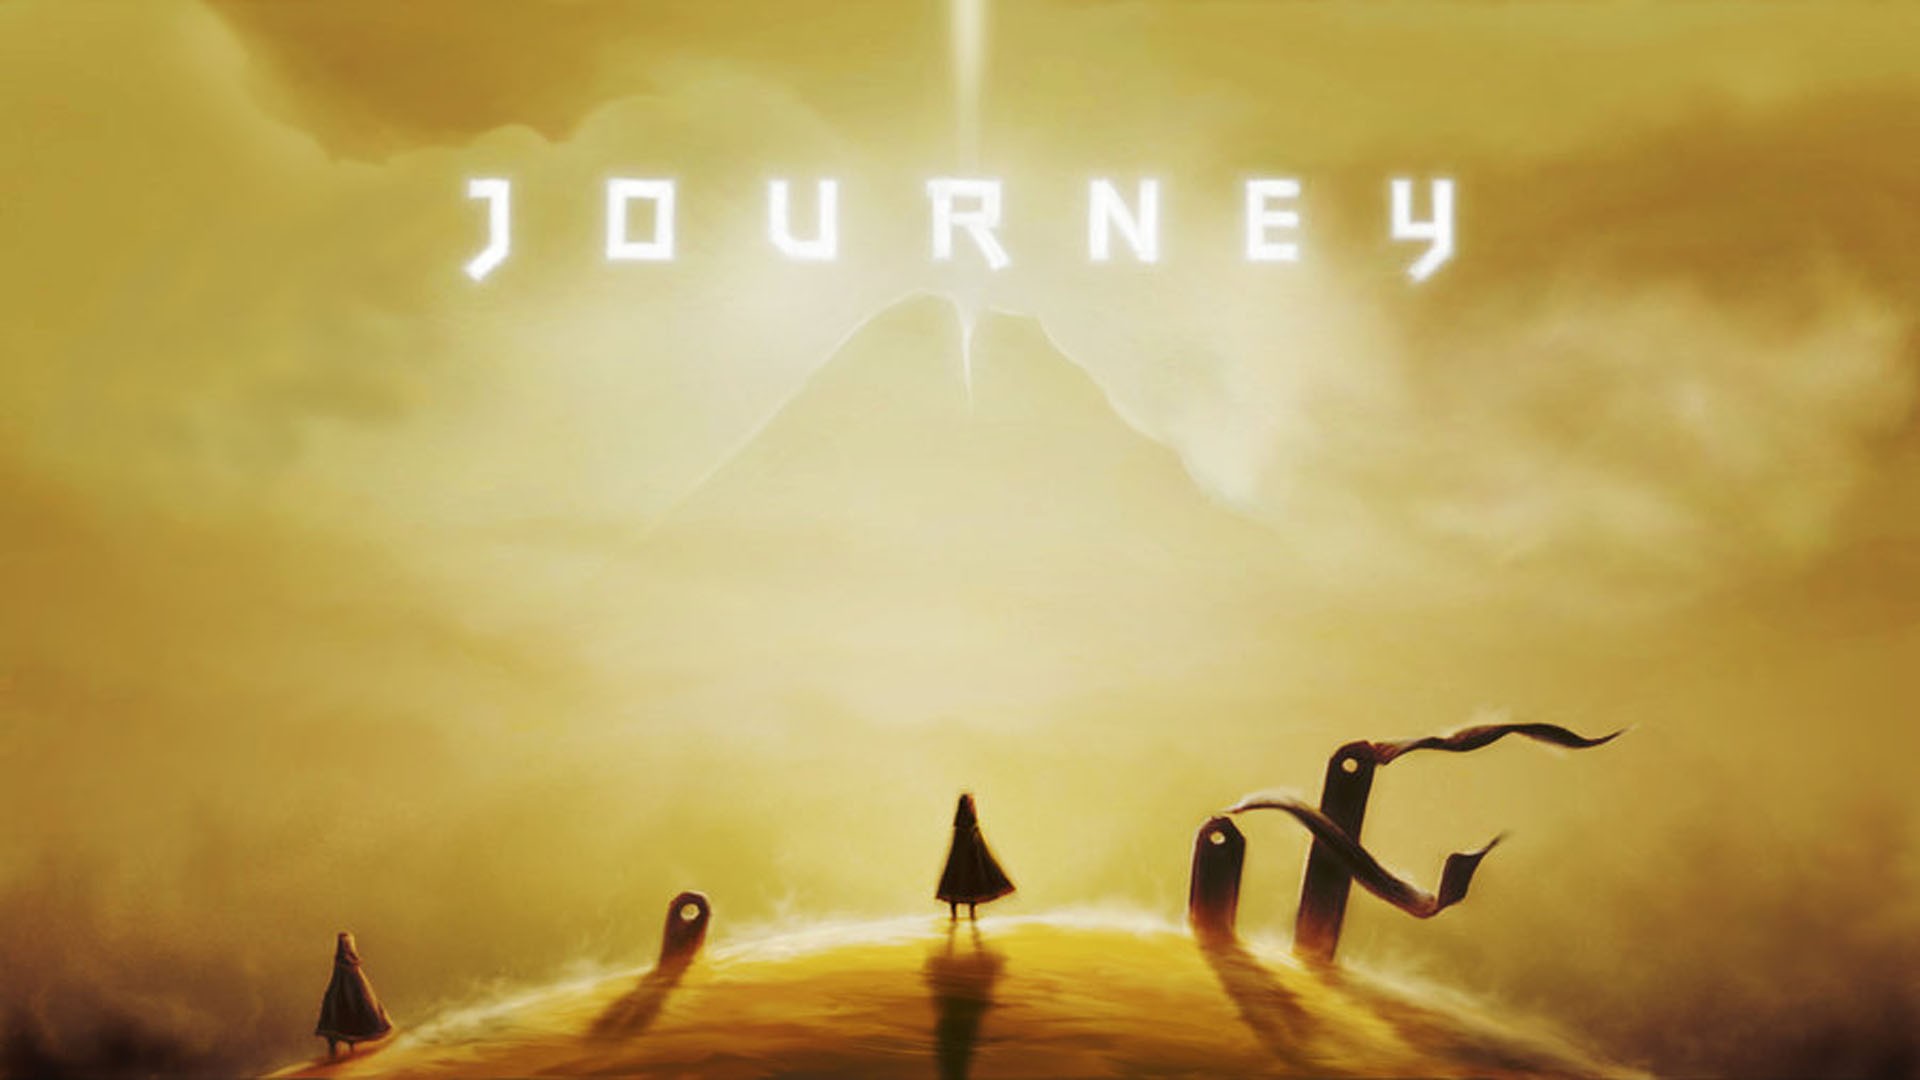 Full journey. Journey игра. Journey (игра, 2012). Journey обложка. Journey игра Постер.